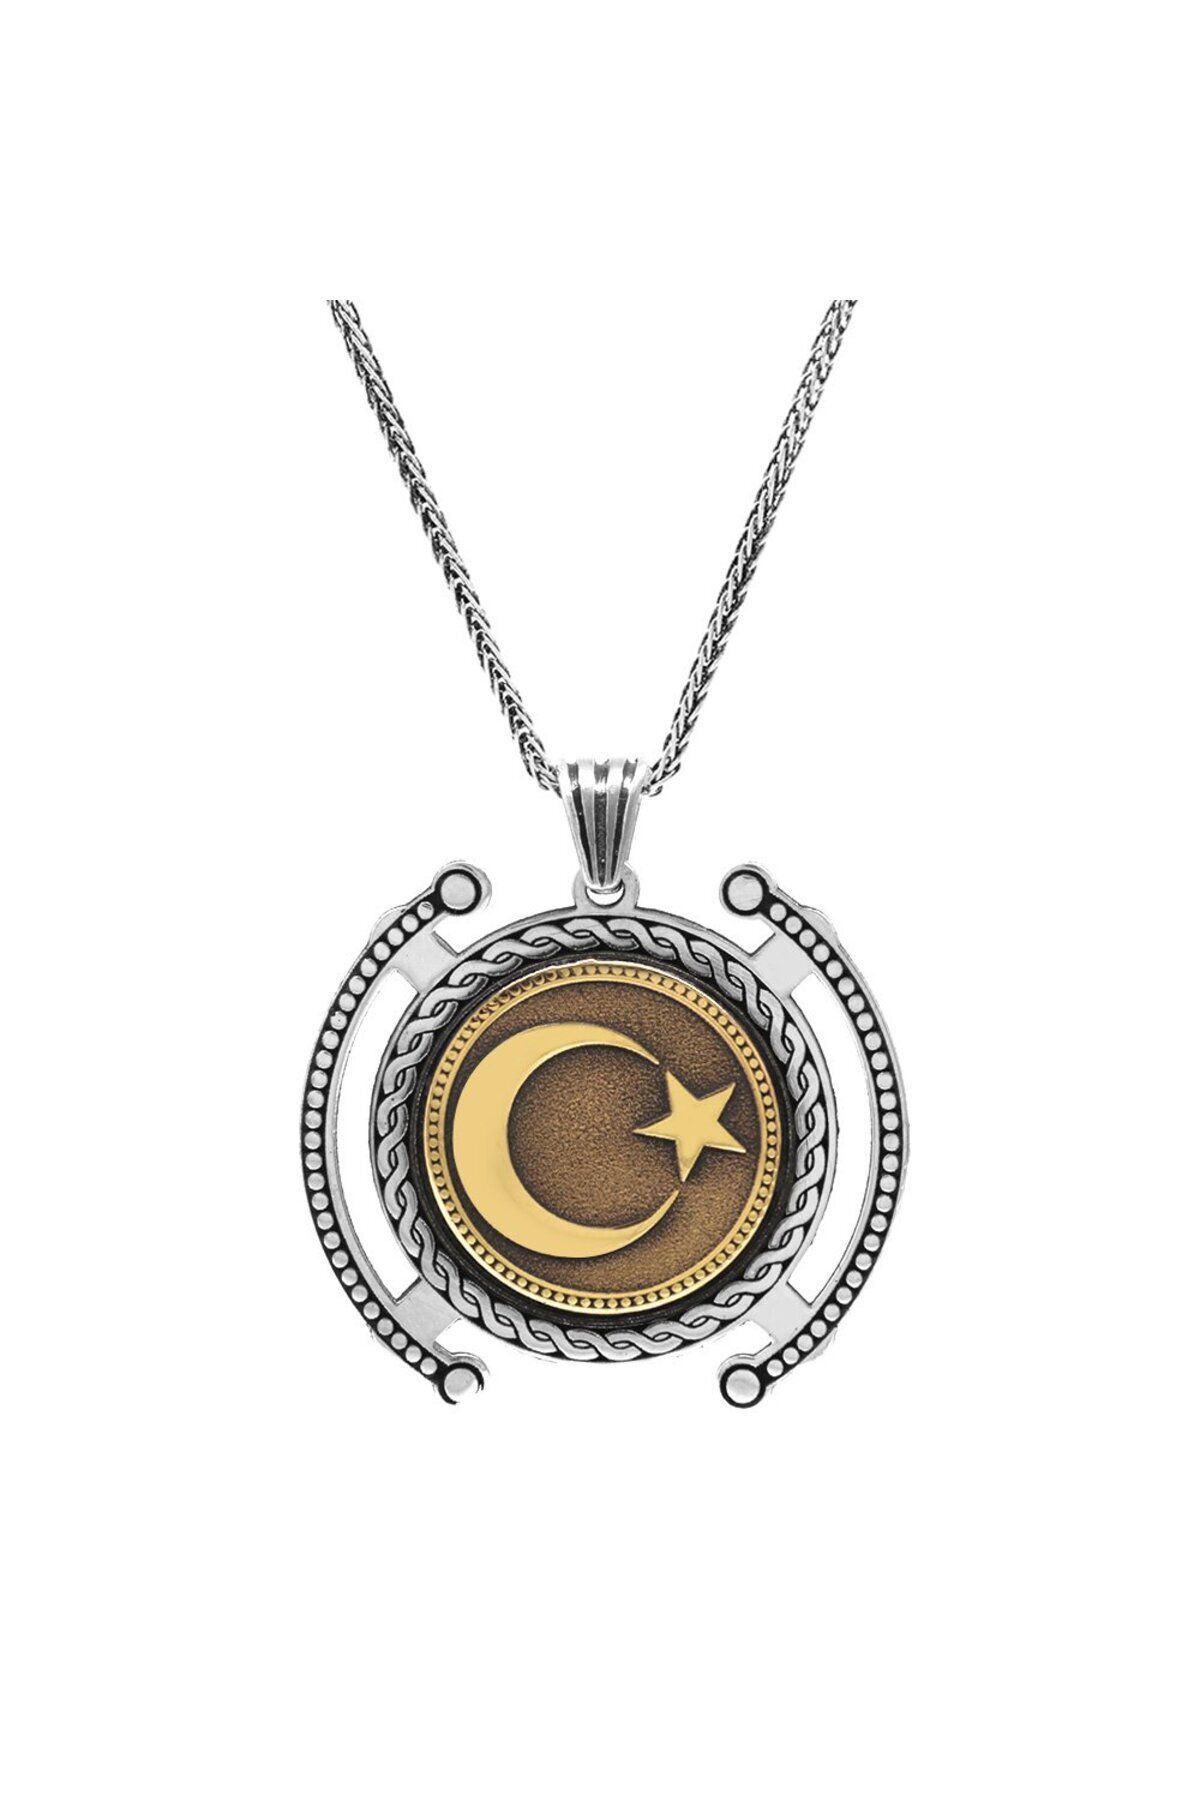 Tesbihane Ayyıldız Temalı Kalın Zincirli 925 Ayar Gümüş Madalyon